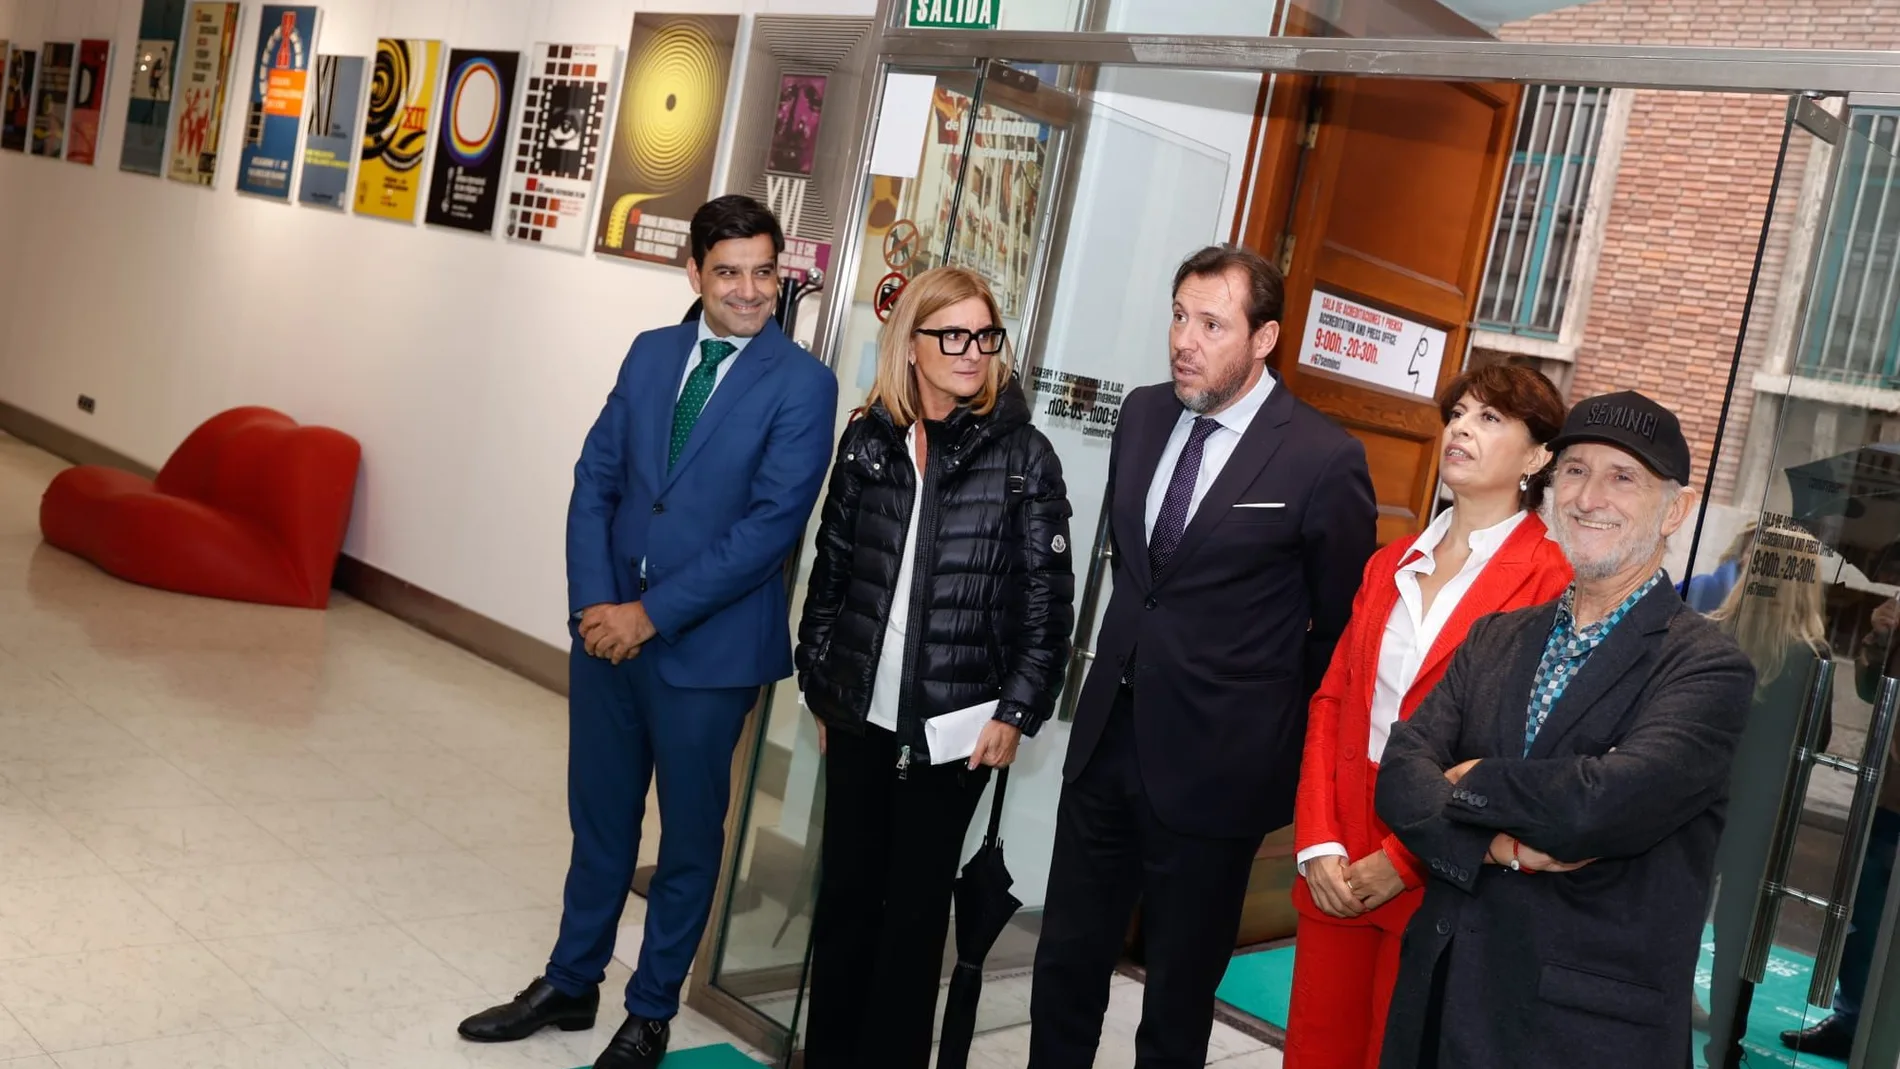 Óscar Puente, Ana Redondo y Javier Angulo visitan el Espacio Seminci junto a responsables de Unicaja, patrocinador oficial de la Seminci, como Manuel Rubio